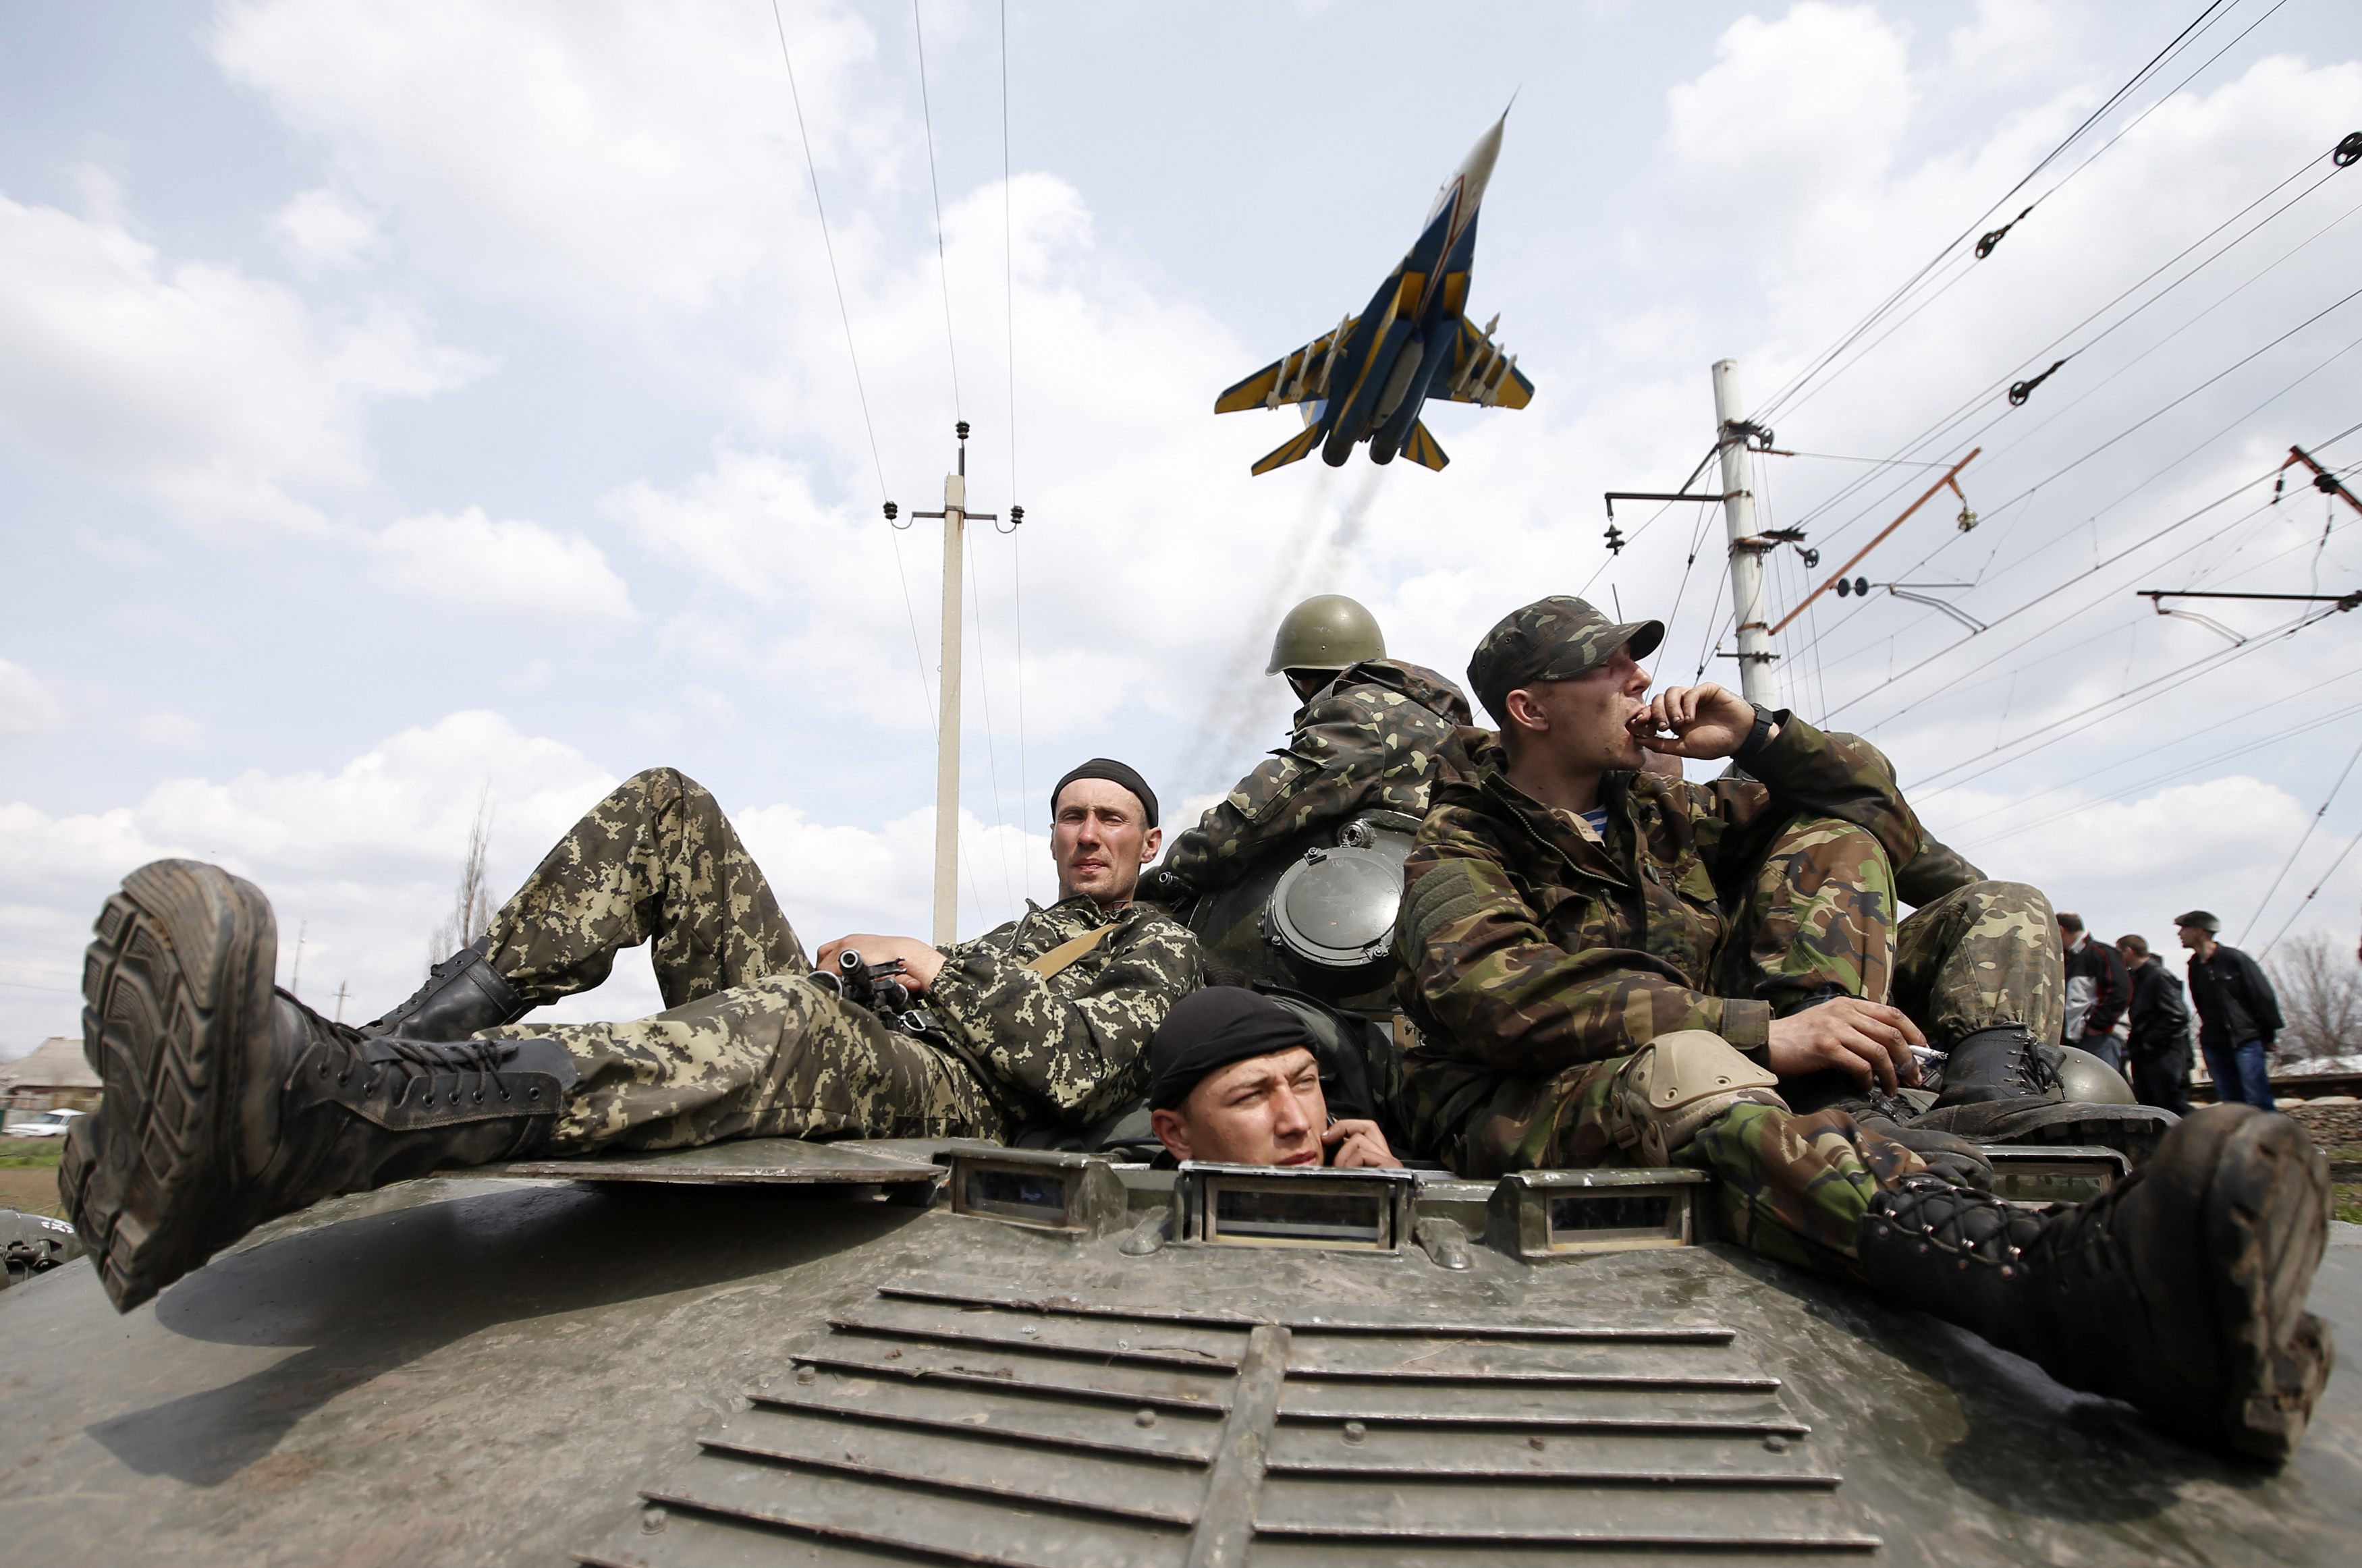 Οι ΗΠΑ καλούν τη Μόσχα να αποσυρθεί τελείως από την Ουκρανία